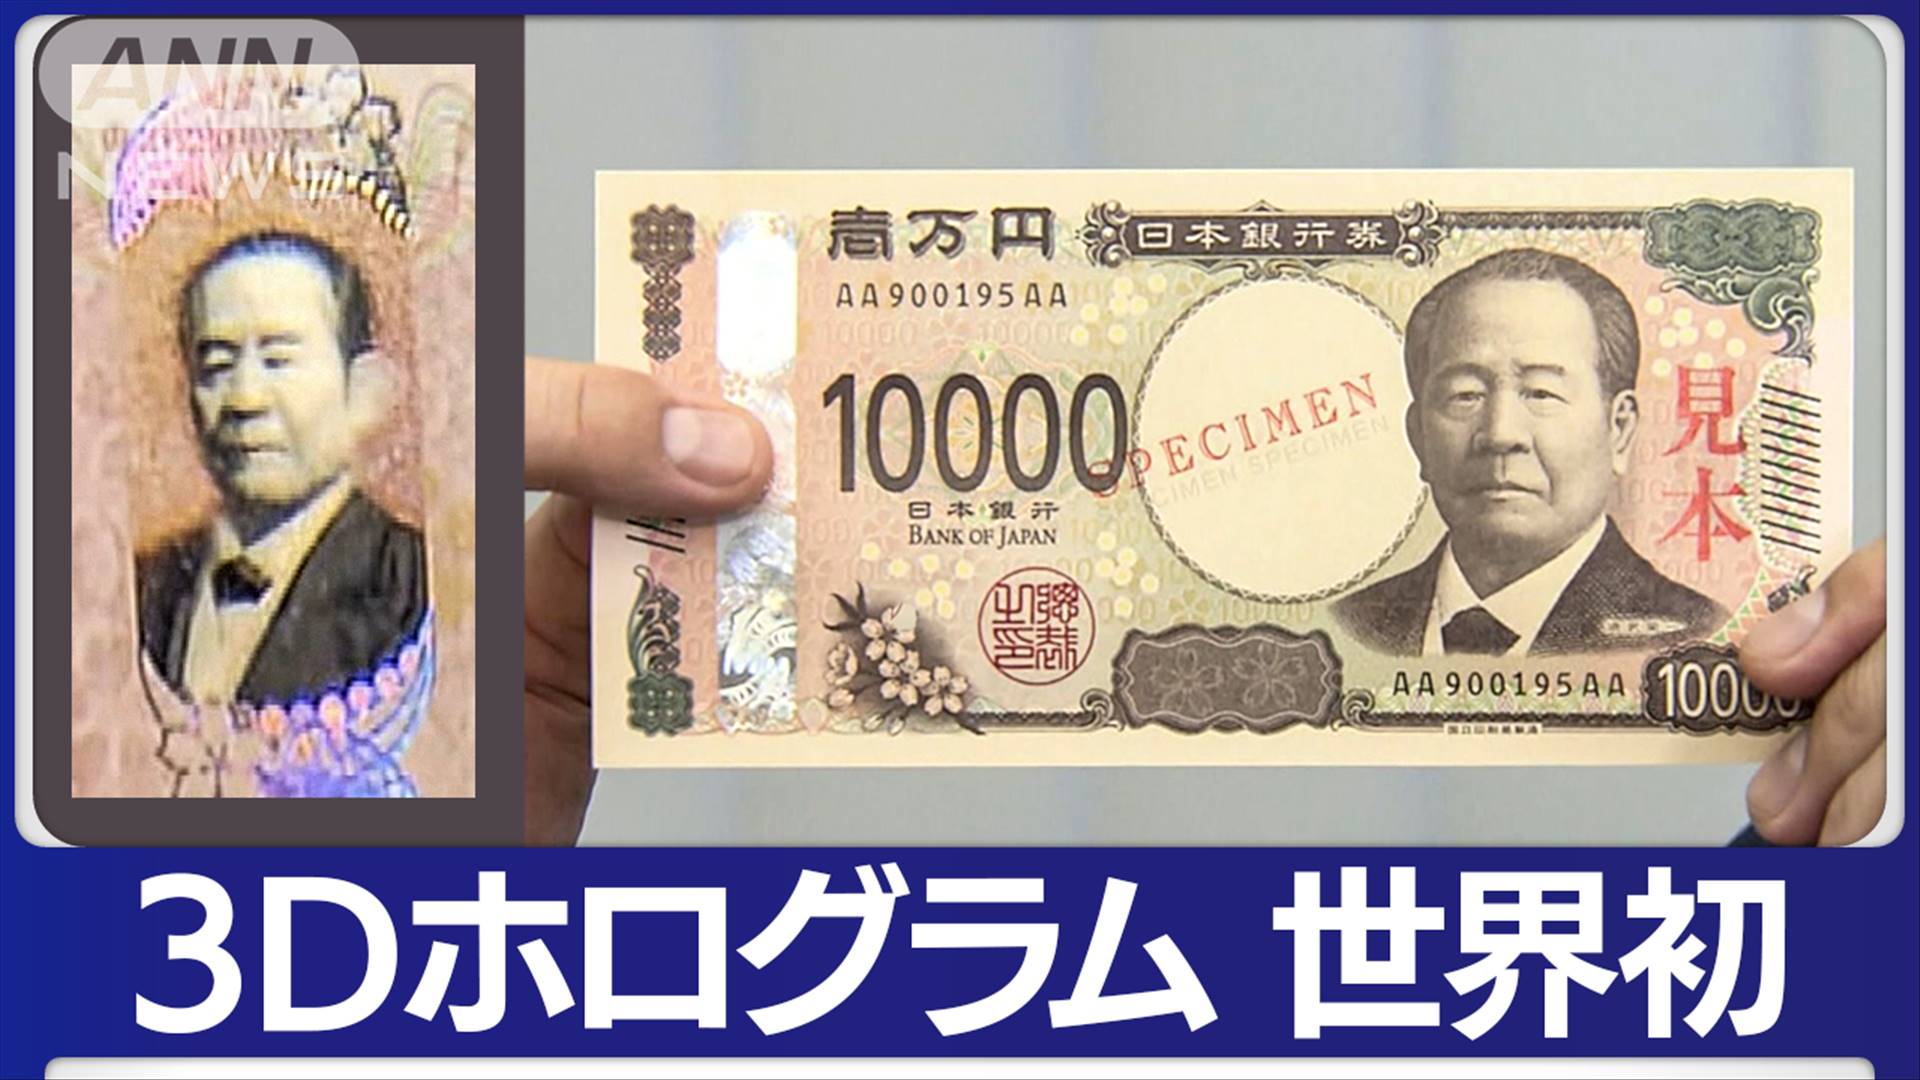 来年発行の新紙幣公開 世界初3Dホログラムなど使用